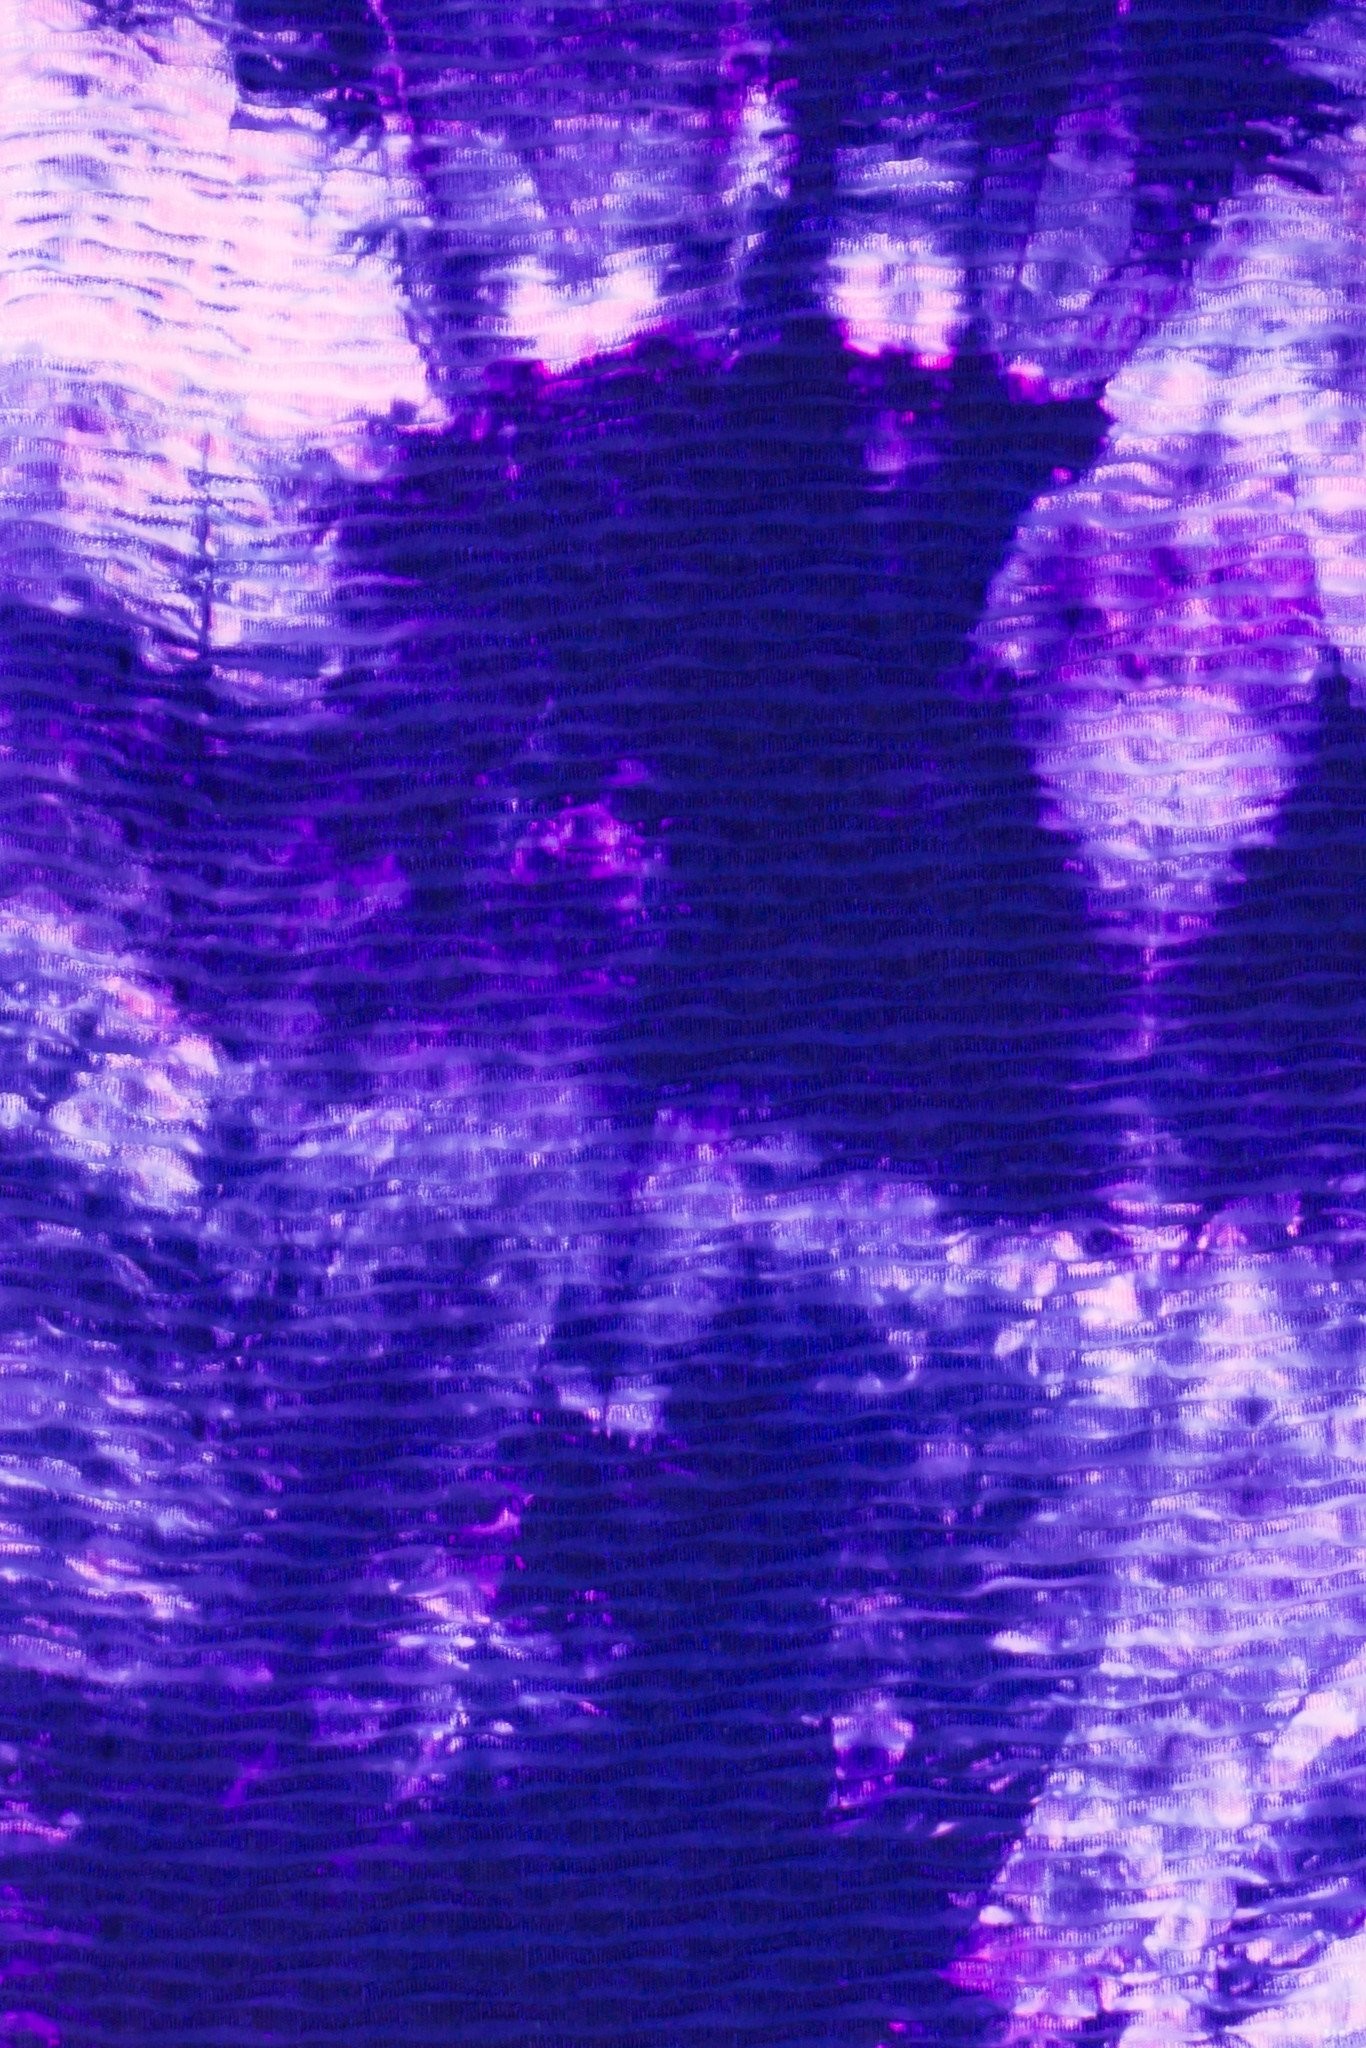 Beautiful tie dye iphone wallpaper hd